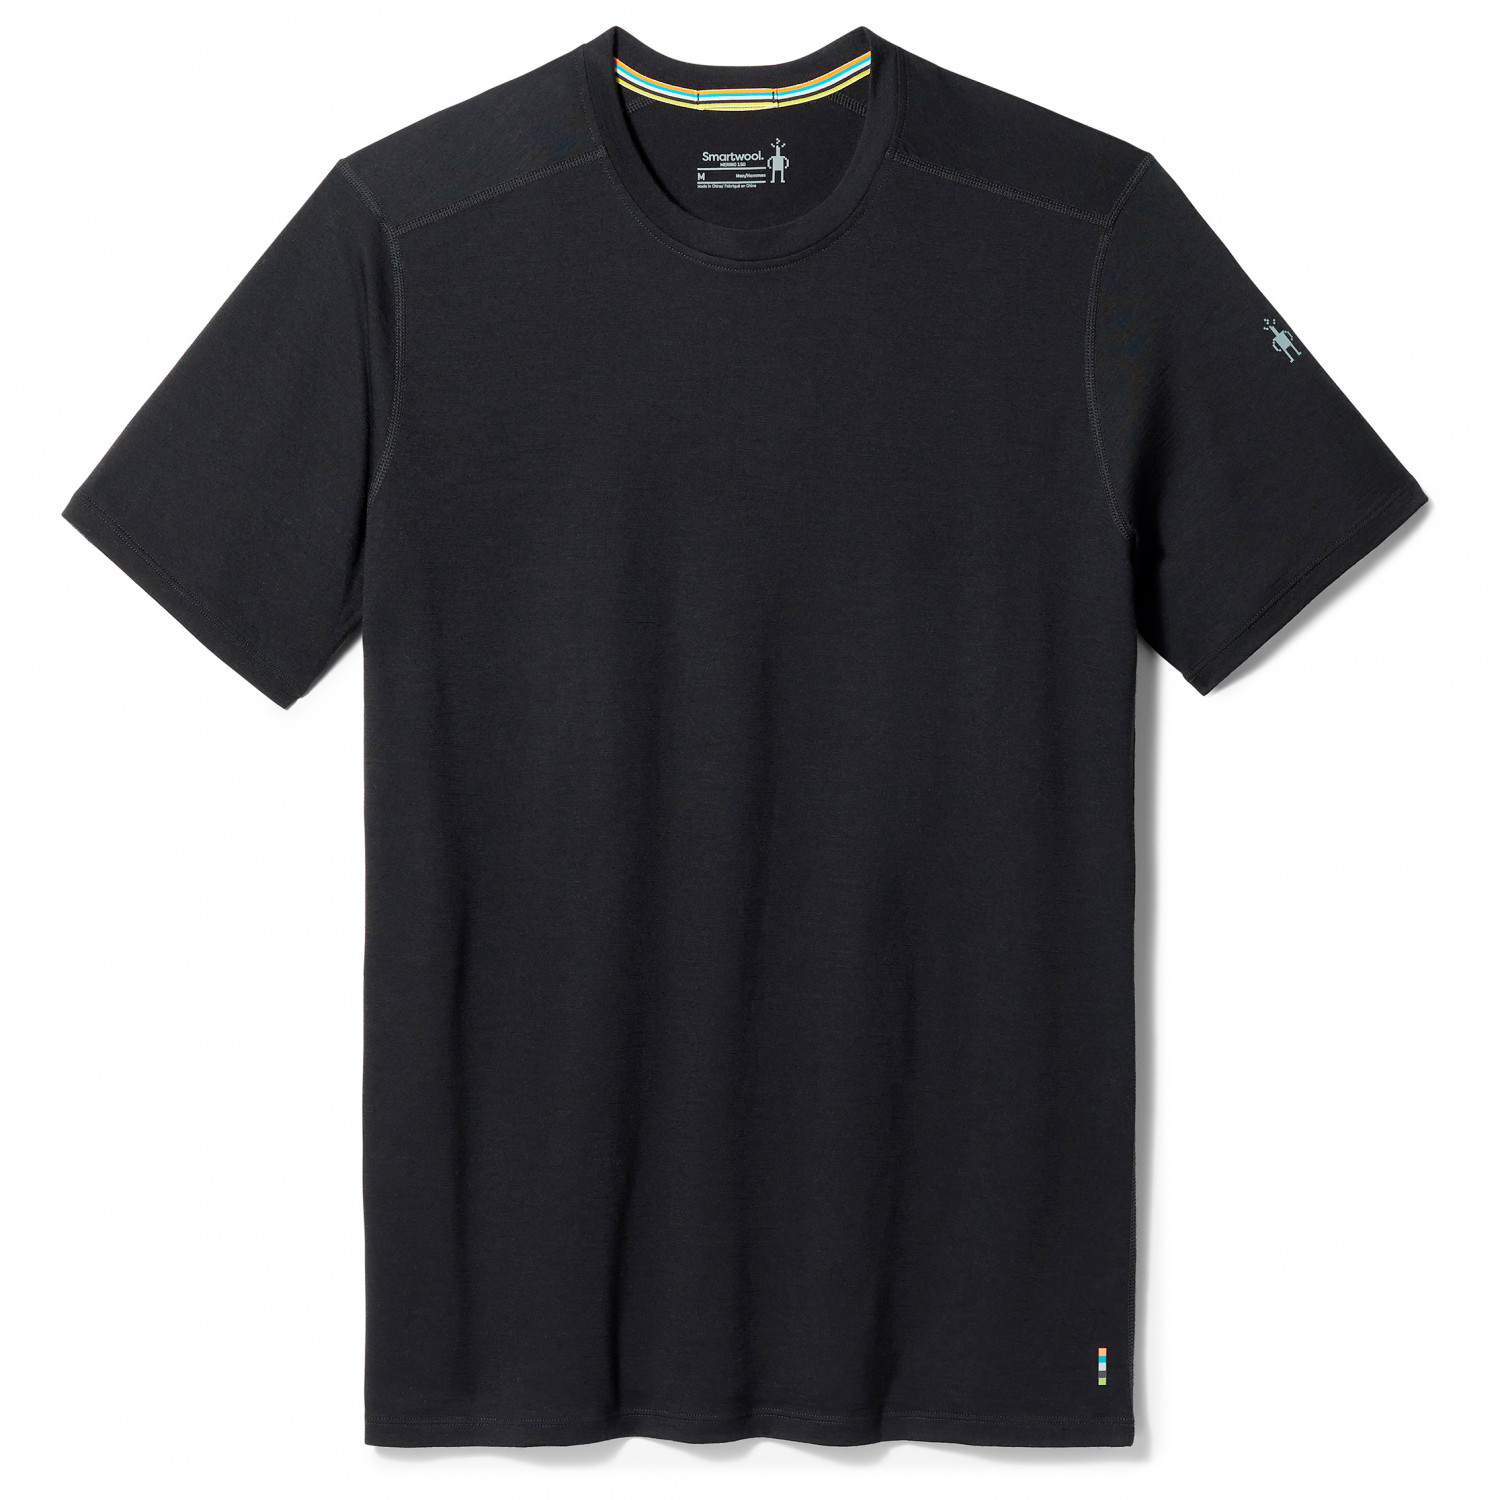 Рубашка из мериноса Smartwool Merino Short Sleeve Tee, черный футболка smartwool merino plant based dye short sleeve tee цвет canary